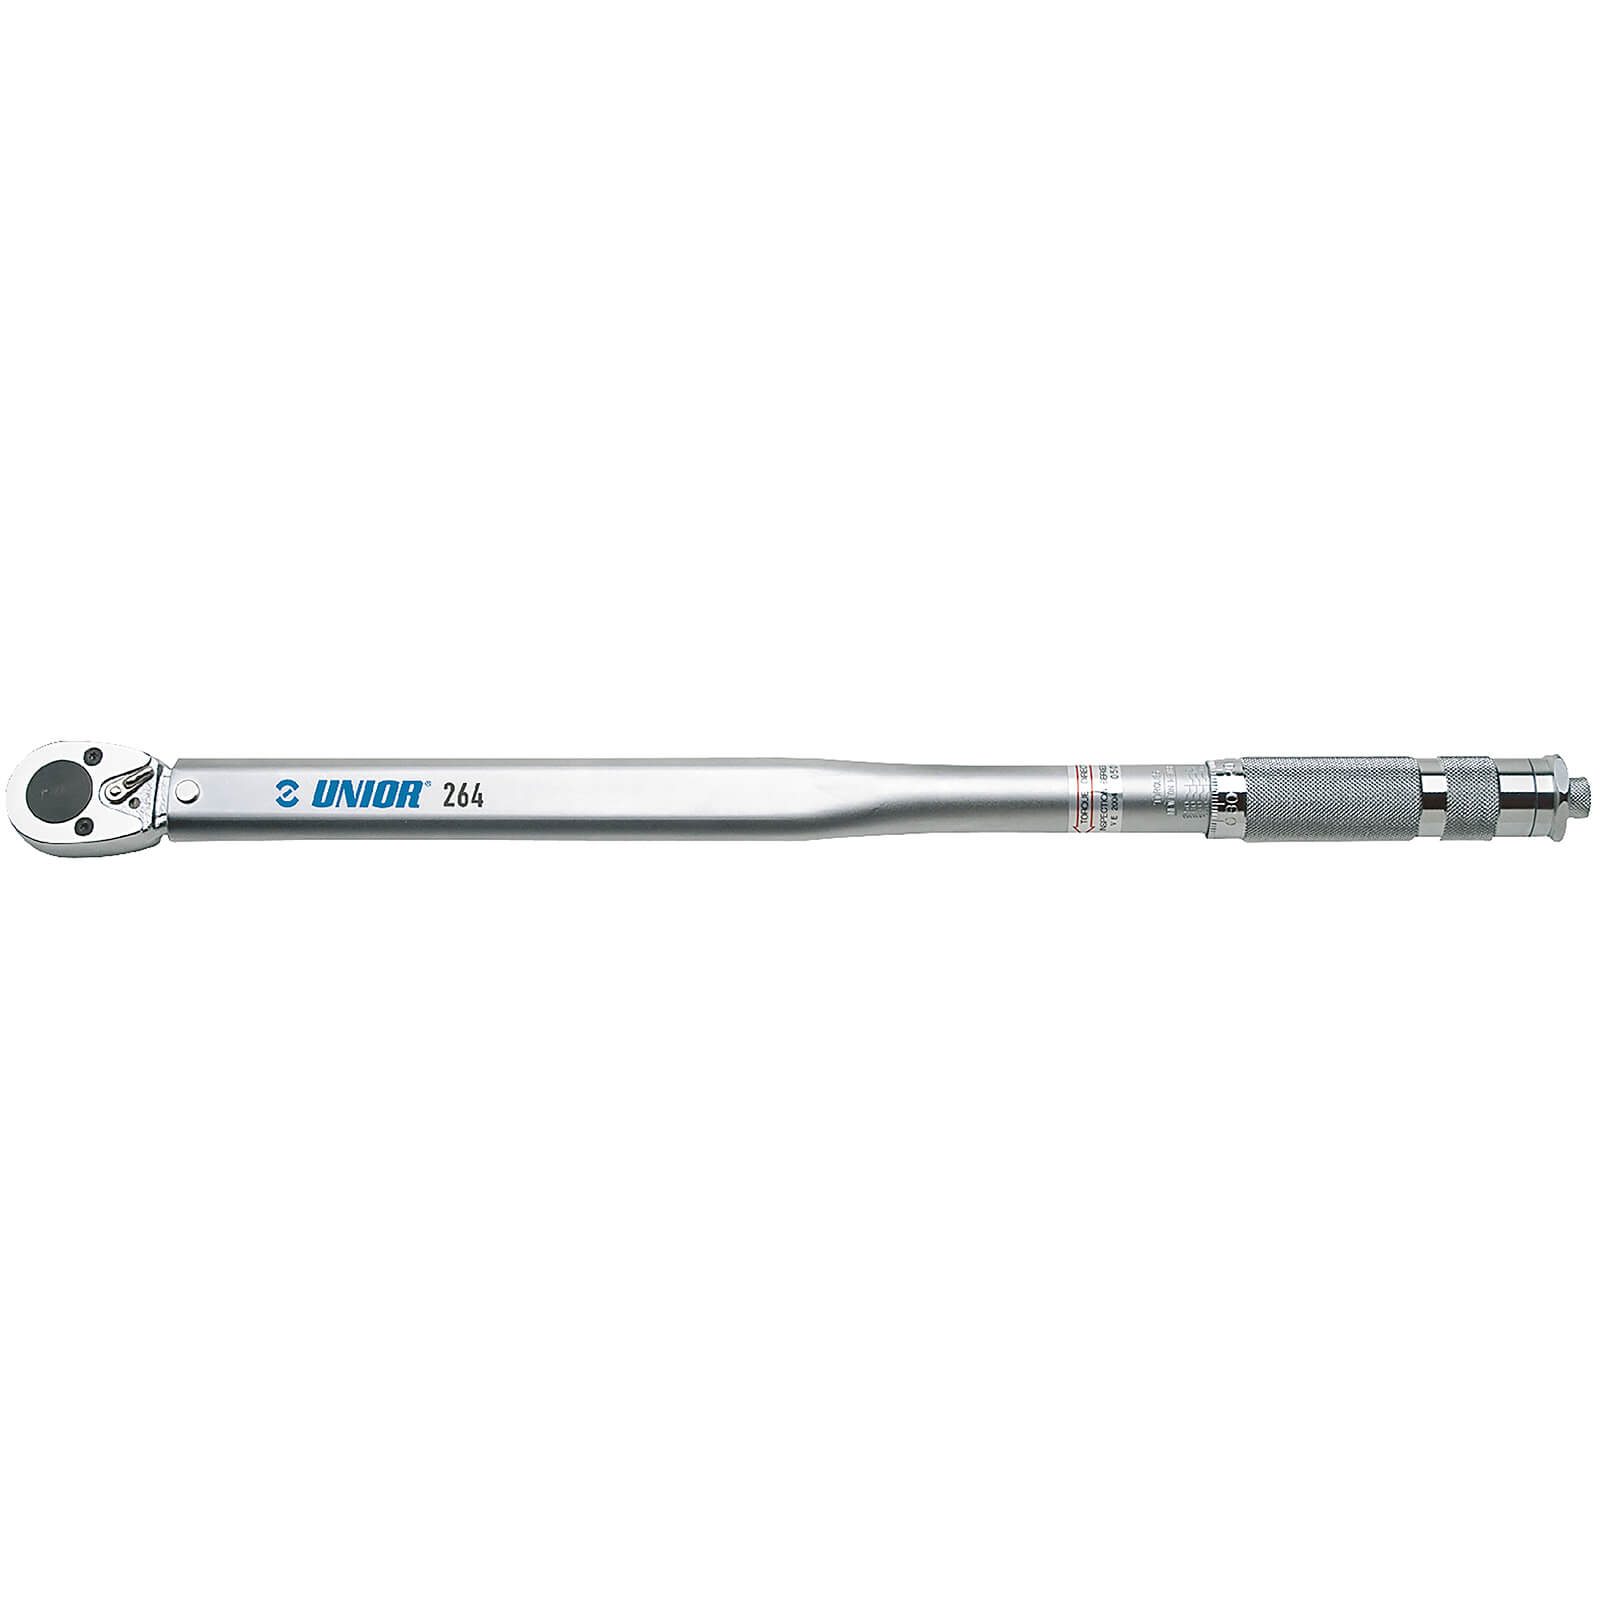 Unior Slipper Torque Wrench 2 - 24 NM